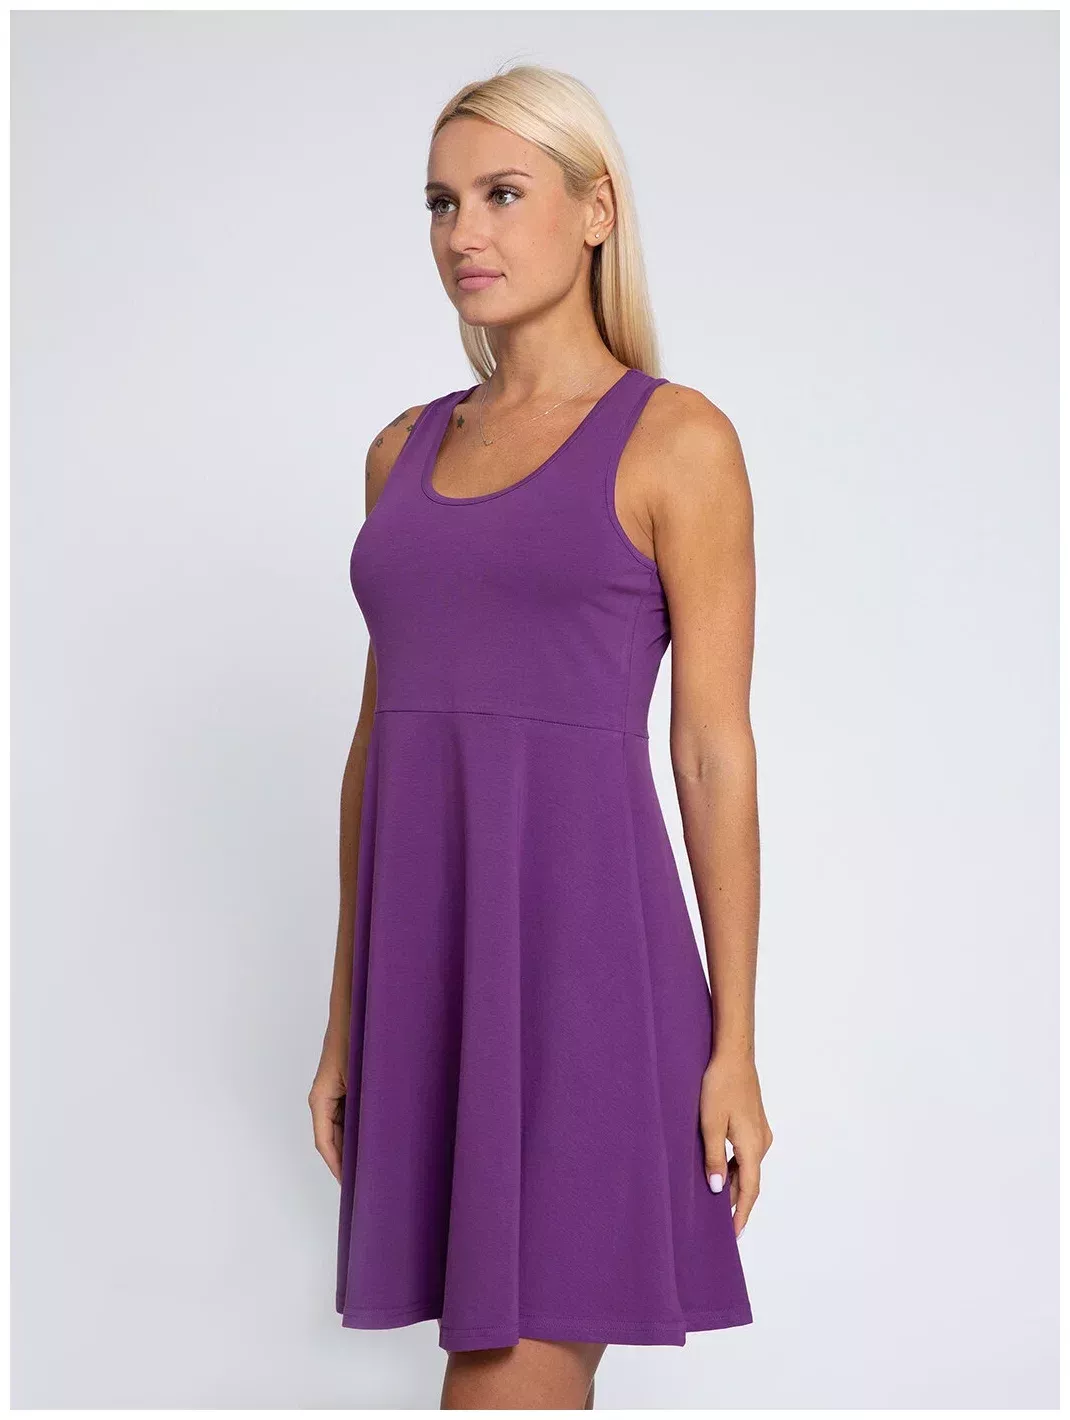 Платье Lunarable, Размер 46 (M), Фиолетовый